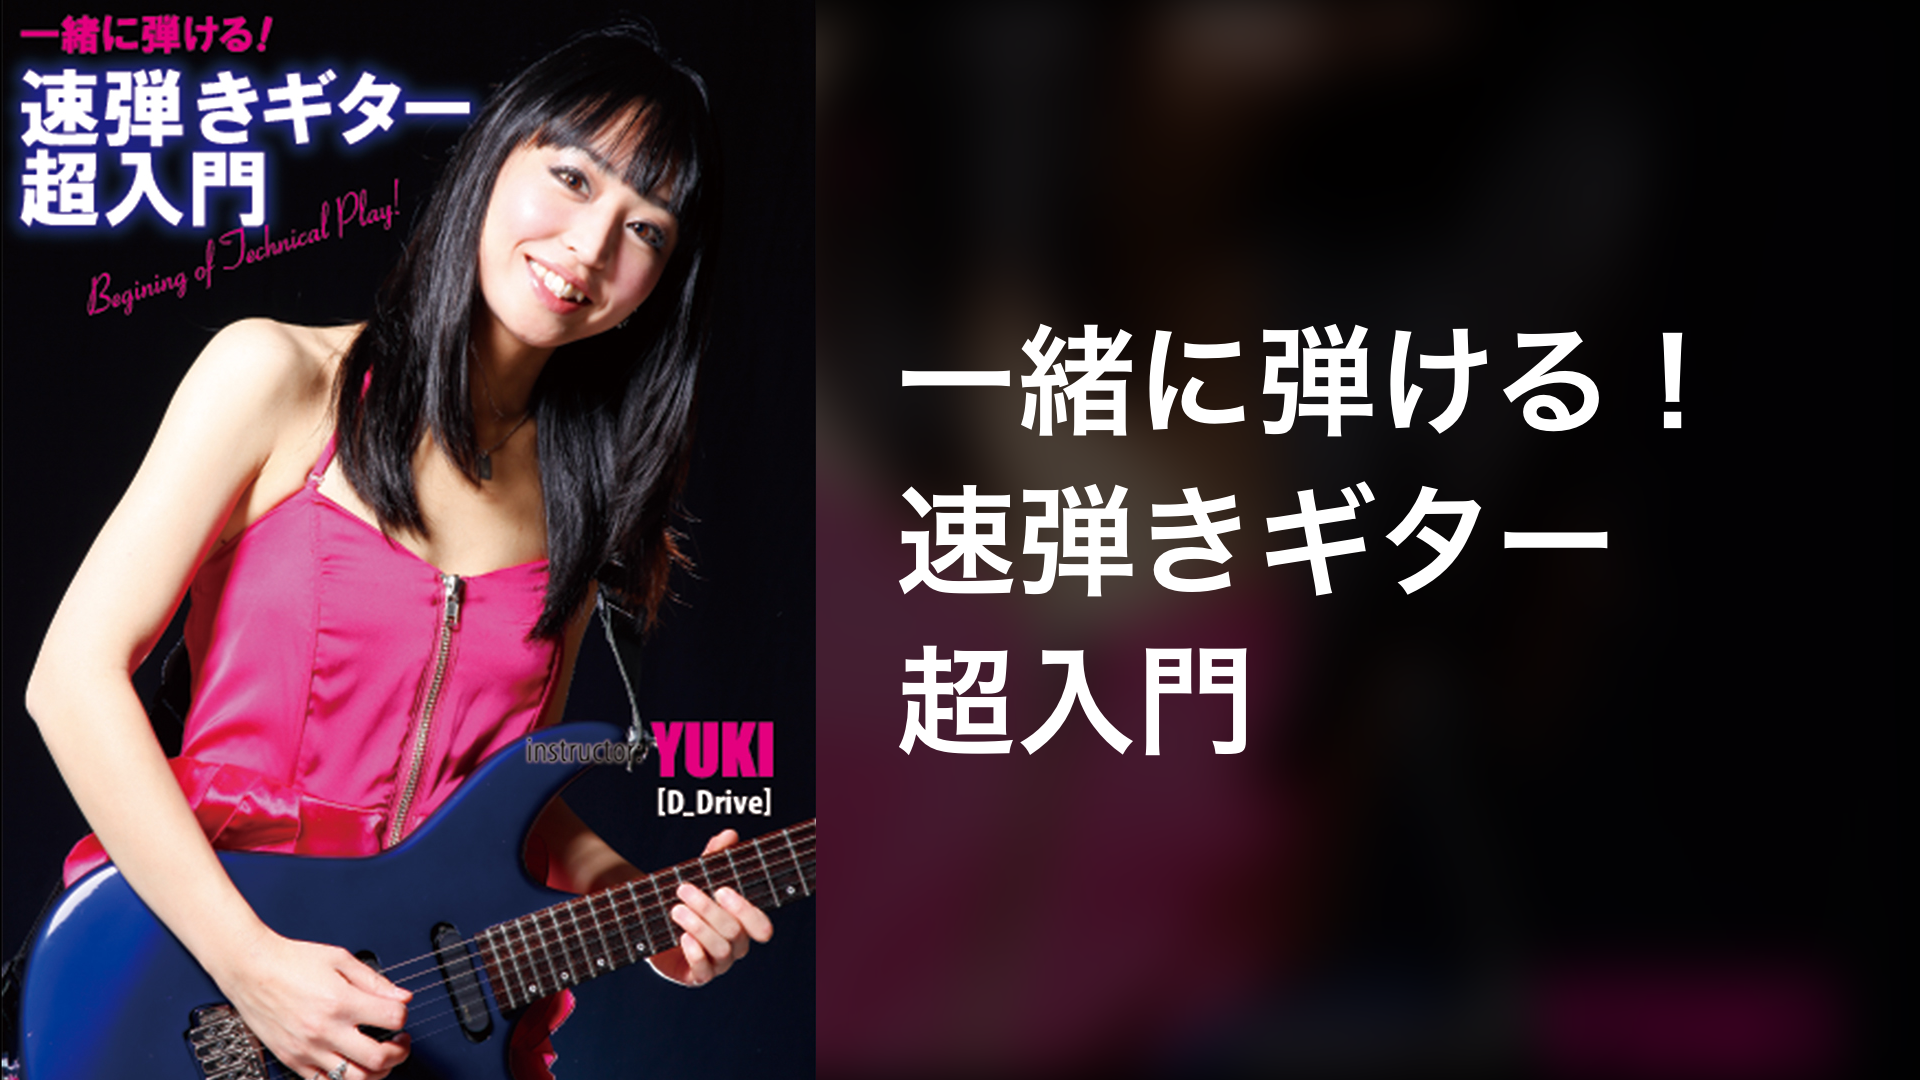 ギター教則DVD 9枚セット D_Drive YUKI ユキ氏他 女性ギタリスト 合計 